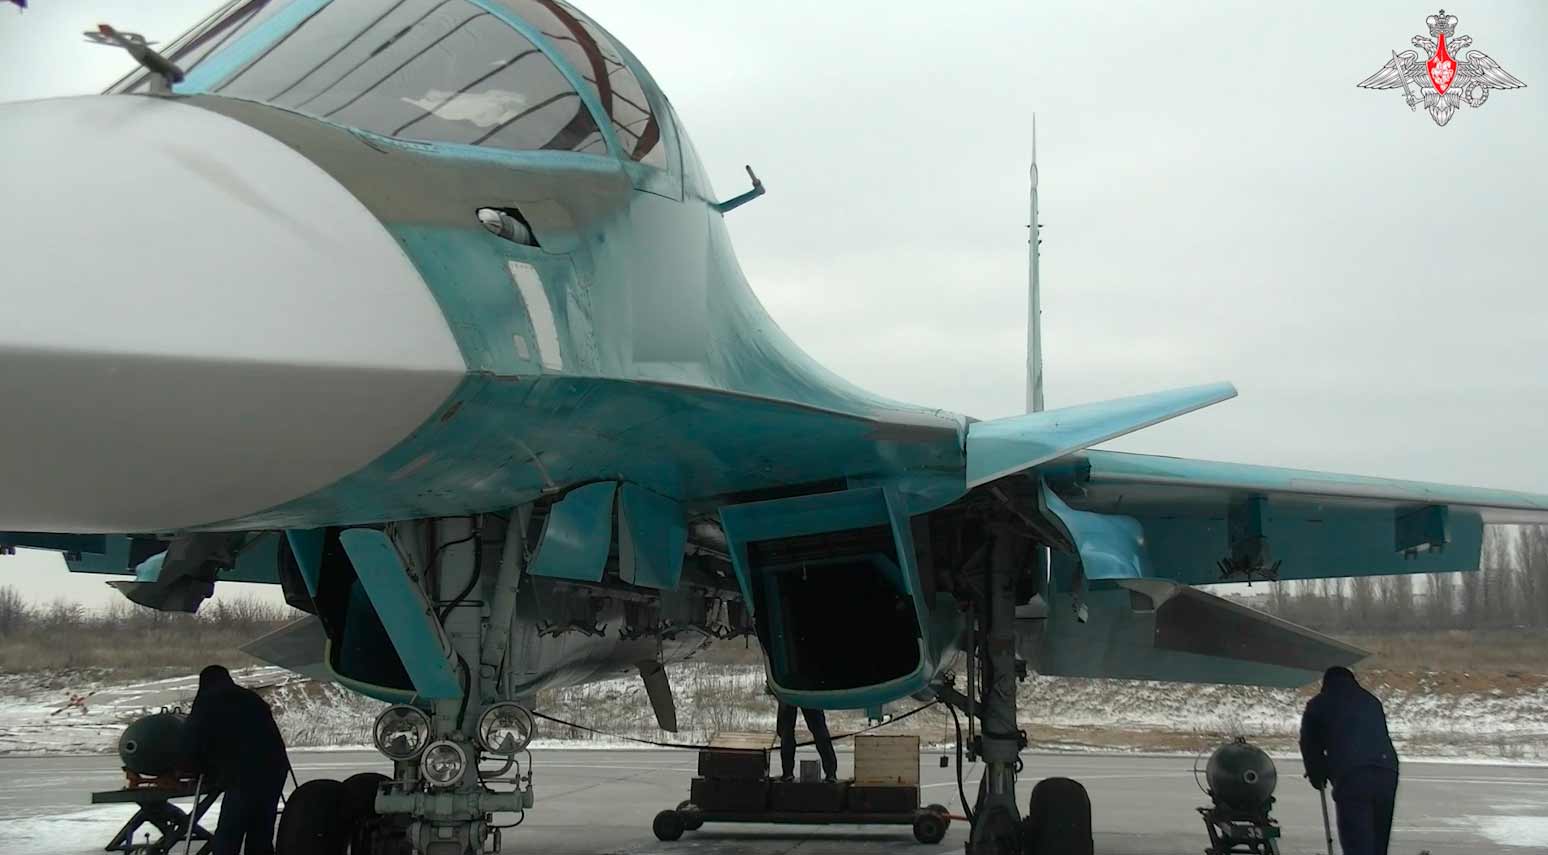 Video cho thấy máy bay ném bom Su-34 với bom dẫn đường tầm xa. Hình ảnh và video: Sao chép từ telegram t.me/mod_russia